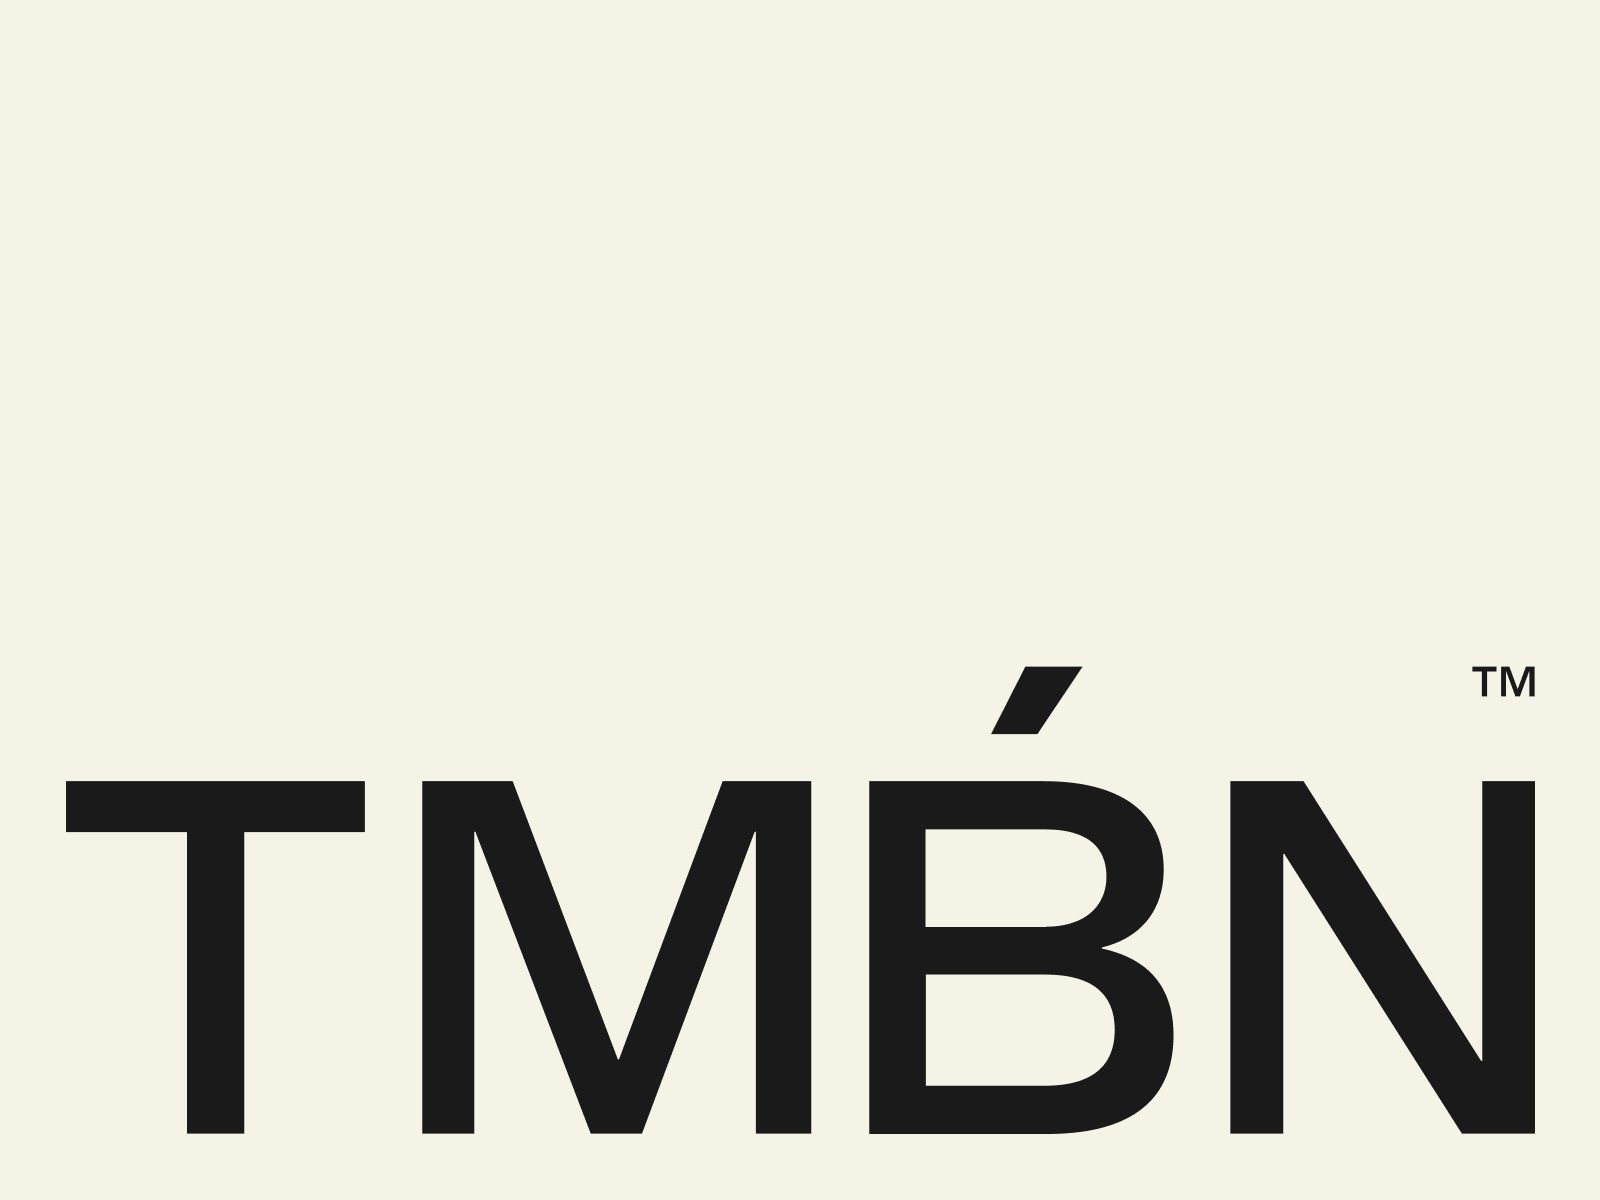 También studio branding concept design identity logo logotype type typography